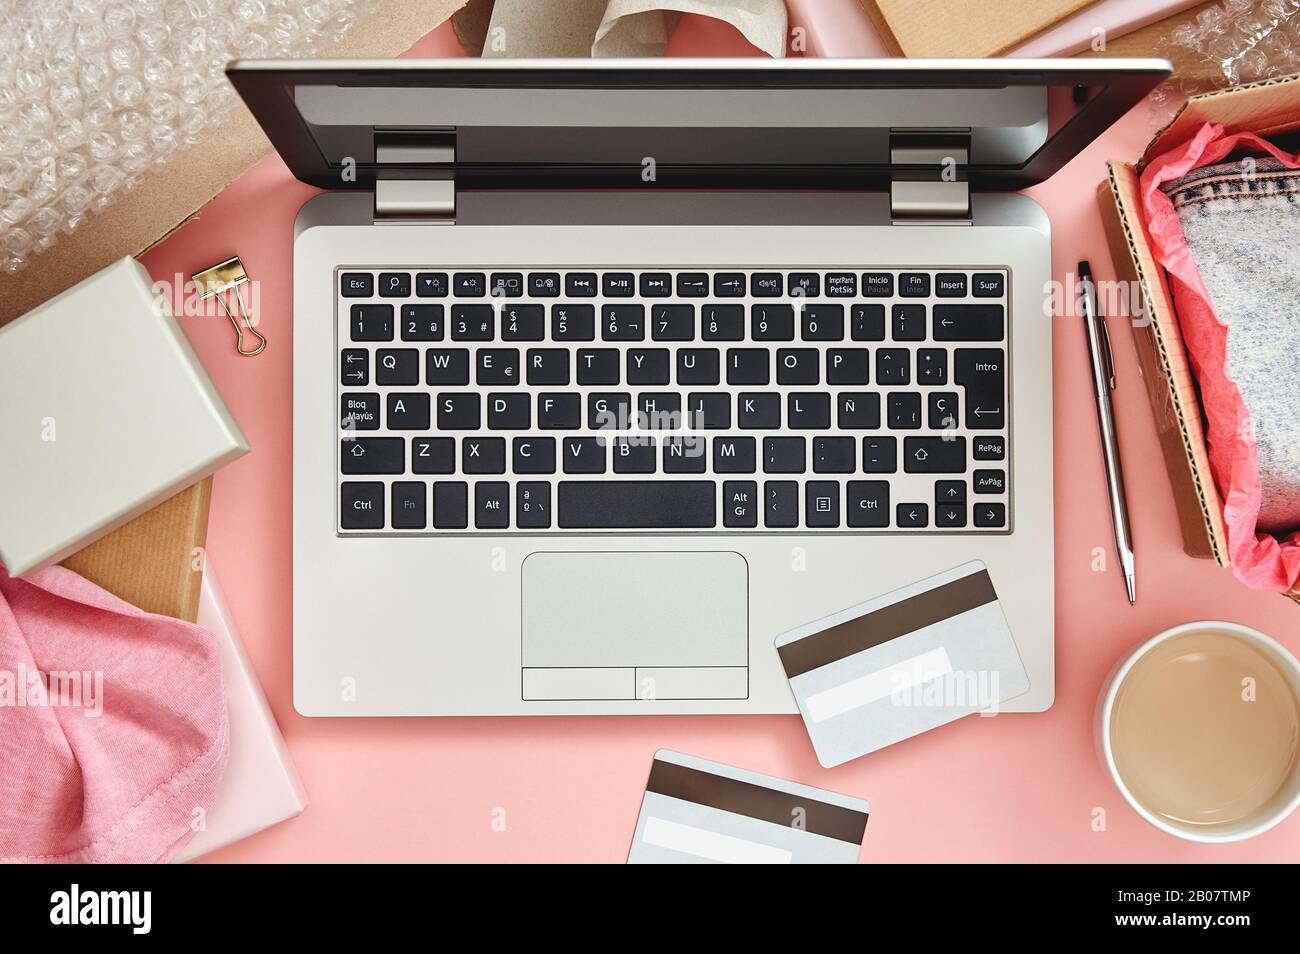 Concept de shopping en ligne sur table de bureau rose avec ordinateur portable, cartes de crédit, colis et vêtements. Vue de dessus. Banque D'Images